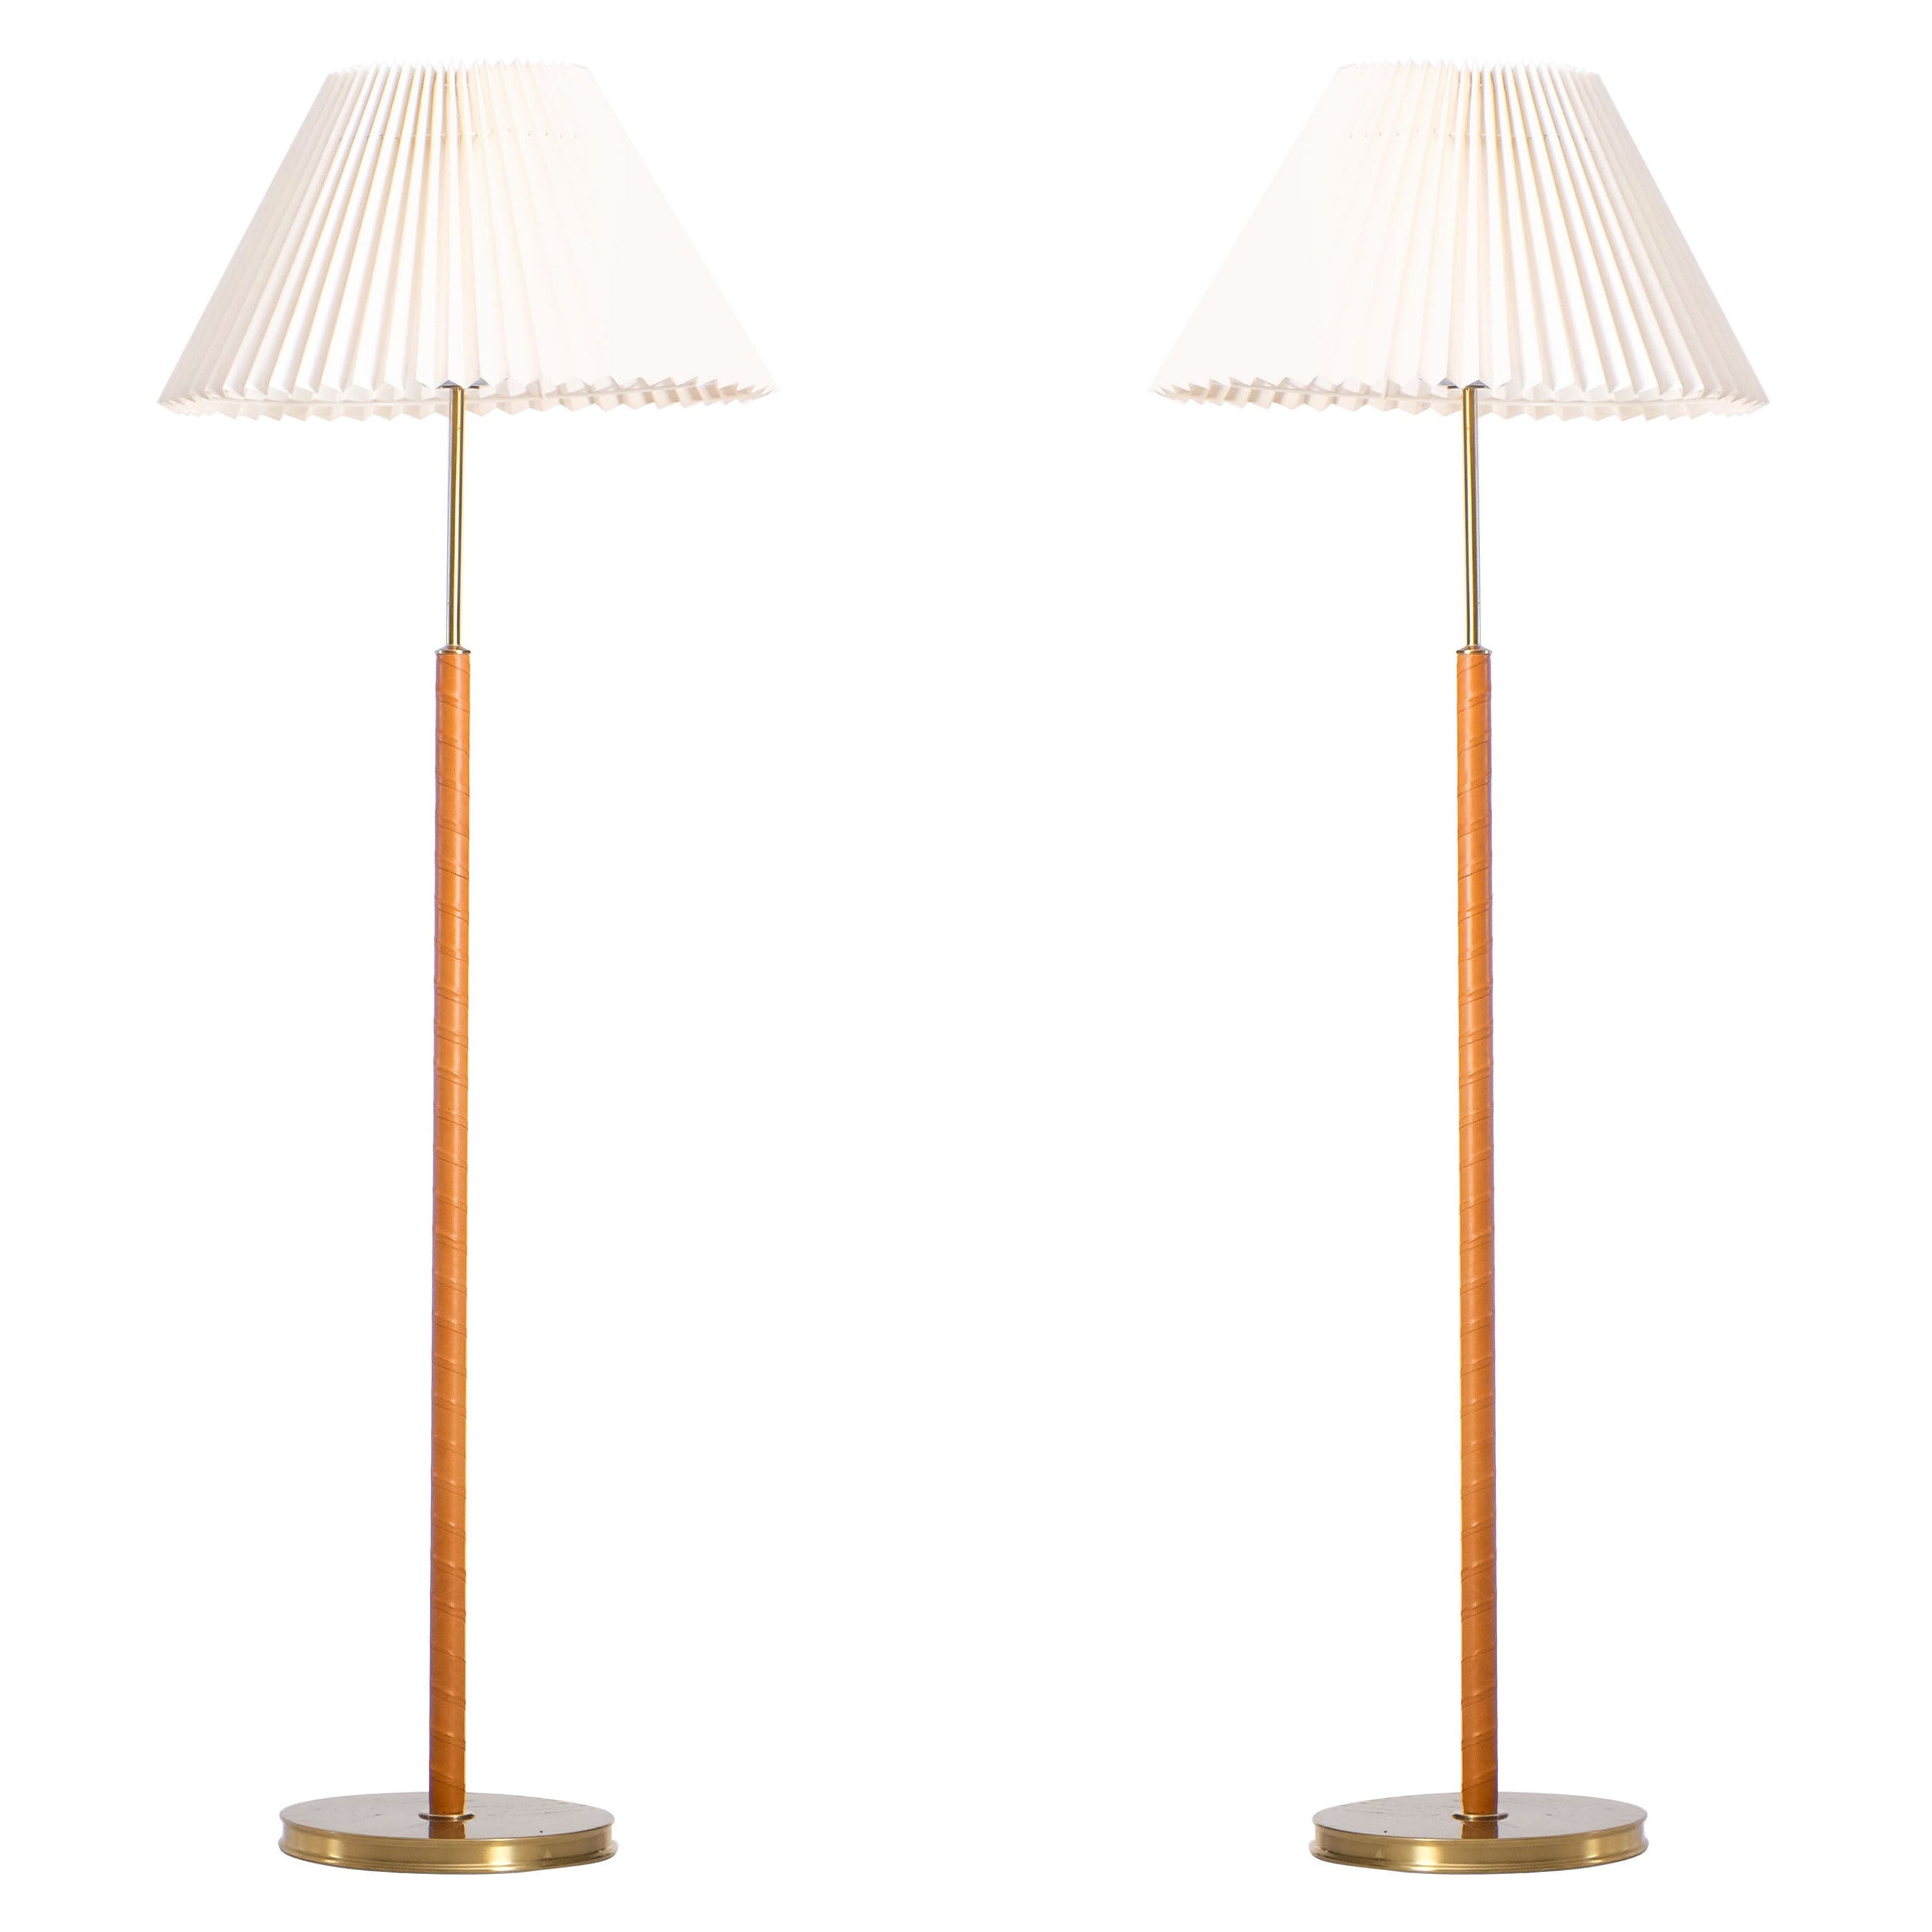 Pair of Josef Frank Floor Lamps, Sweden